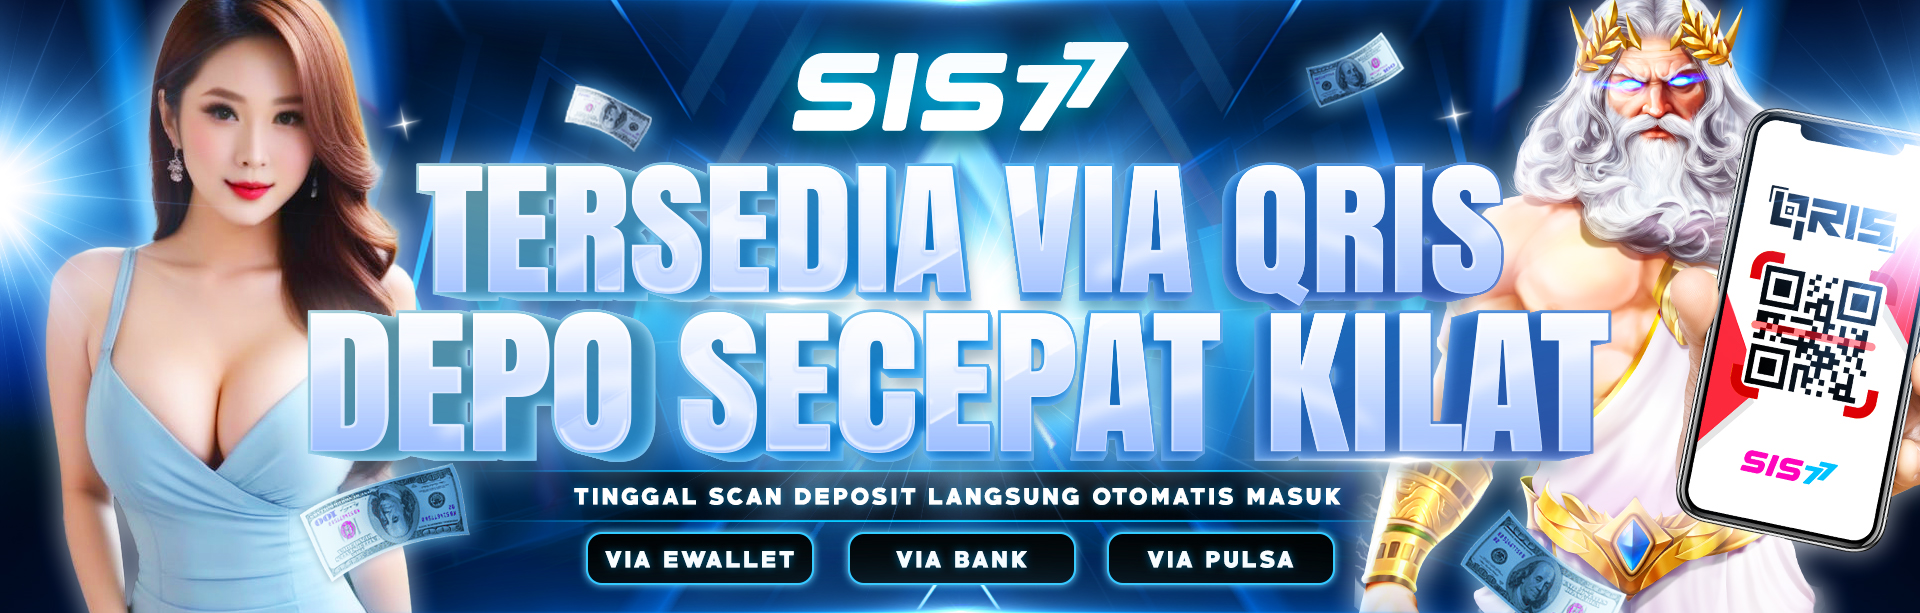 SIS77 Tersedia Deposit Qris